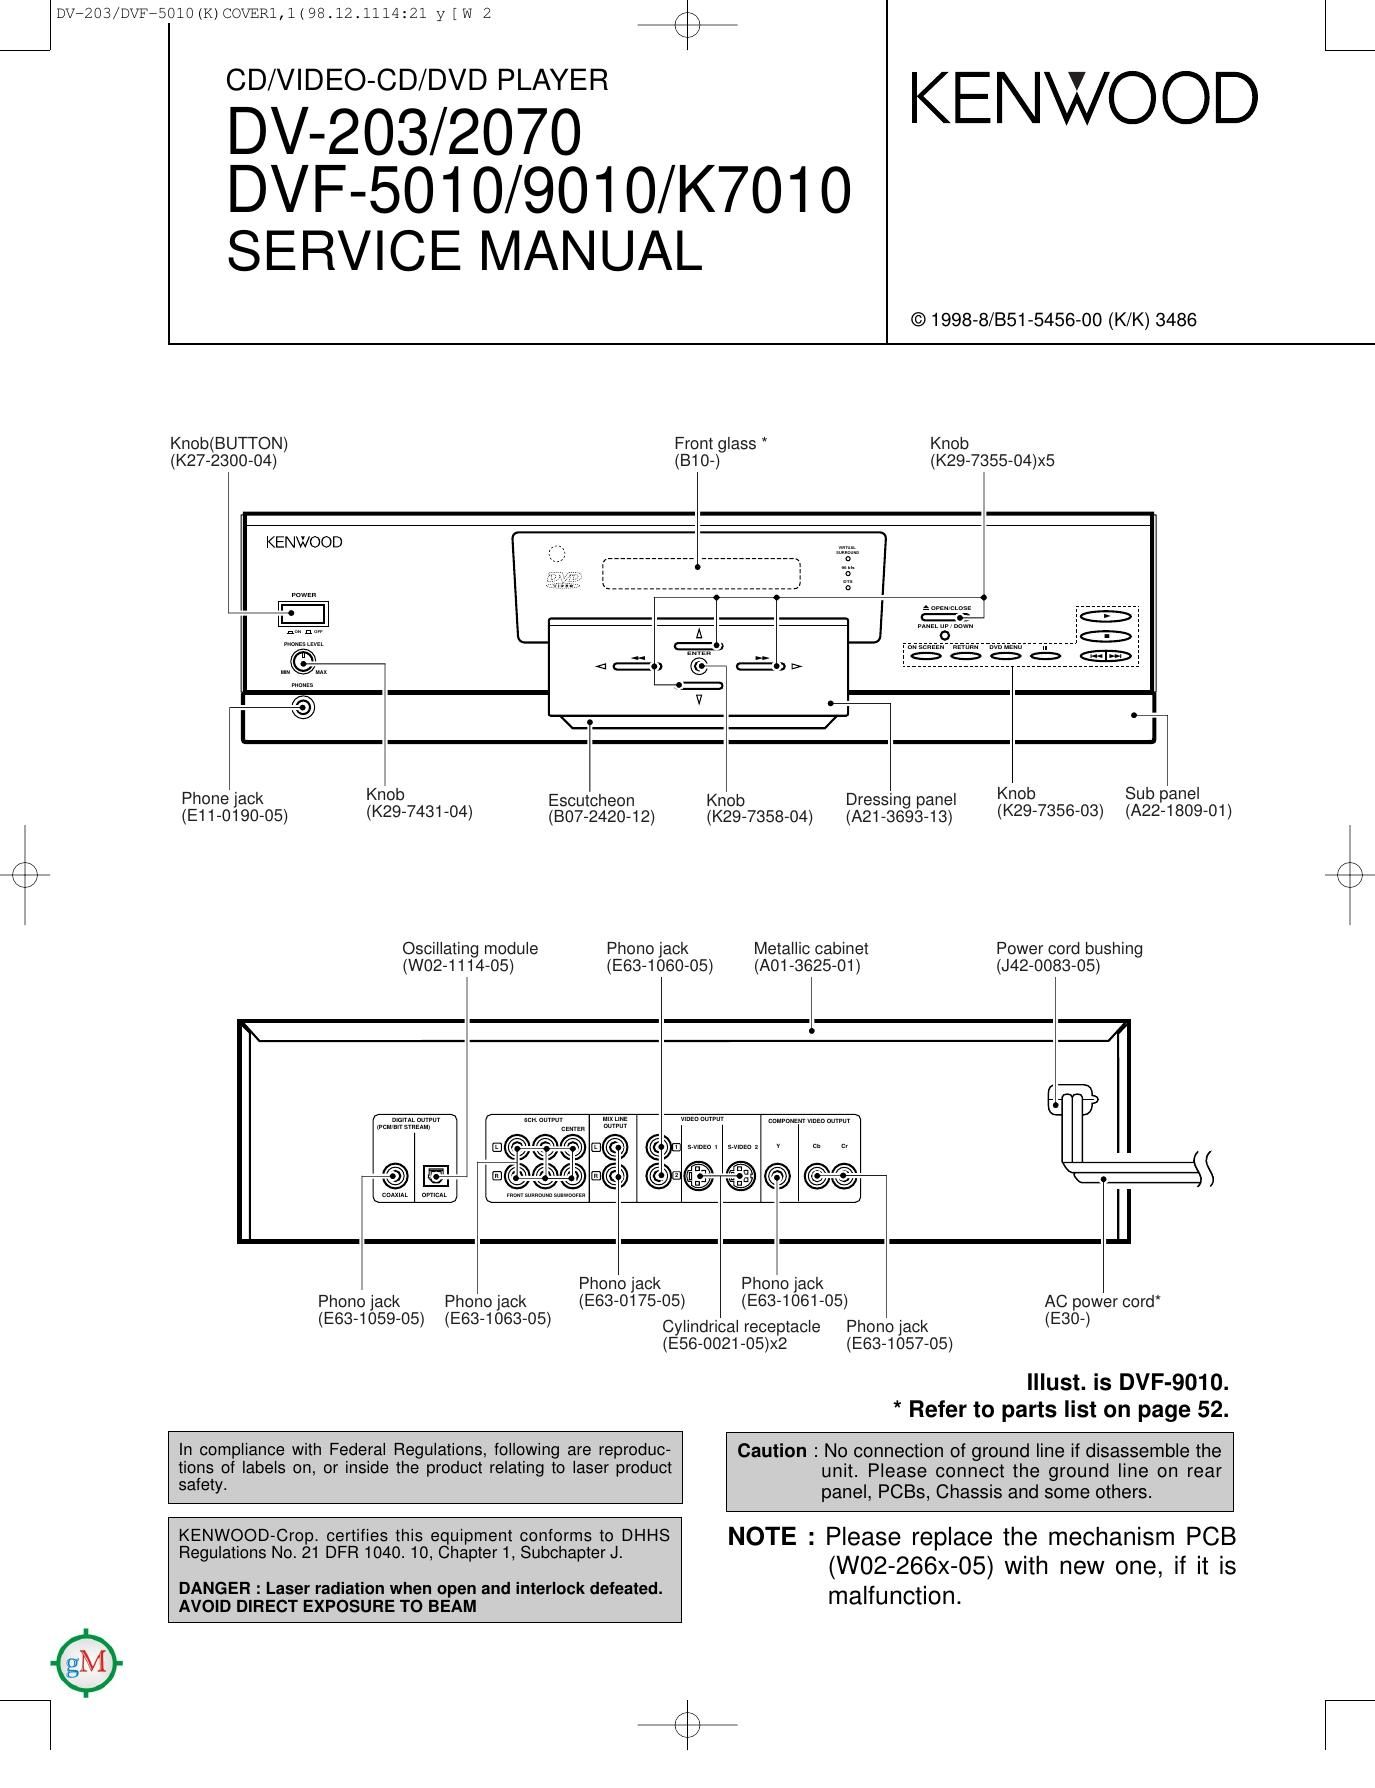 Kenwood DV 2070 Service Manual